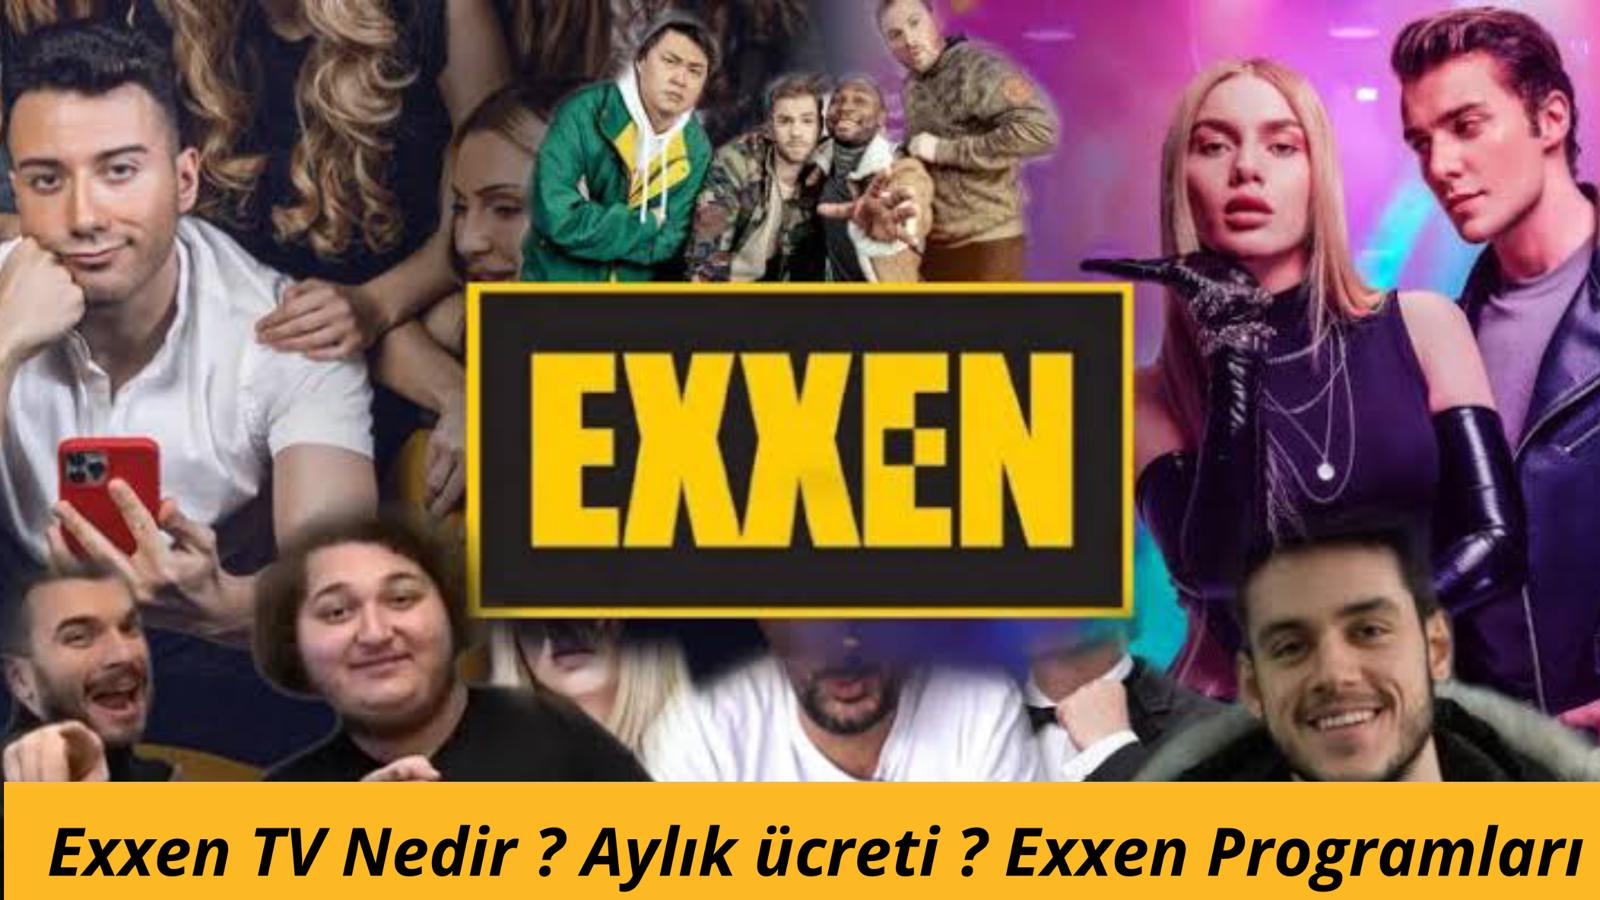 exxen tv nasil izlenir exxen aylik ucreti exxen programlari teknoloji